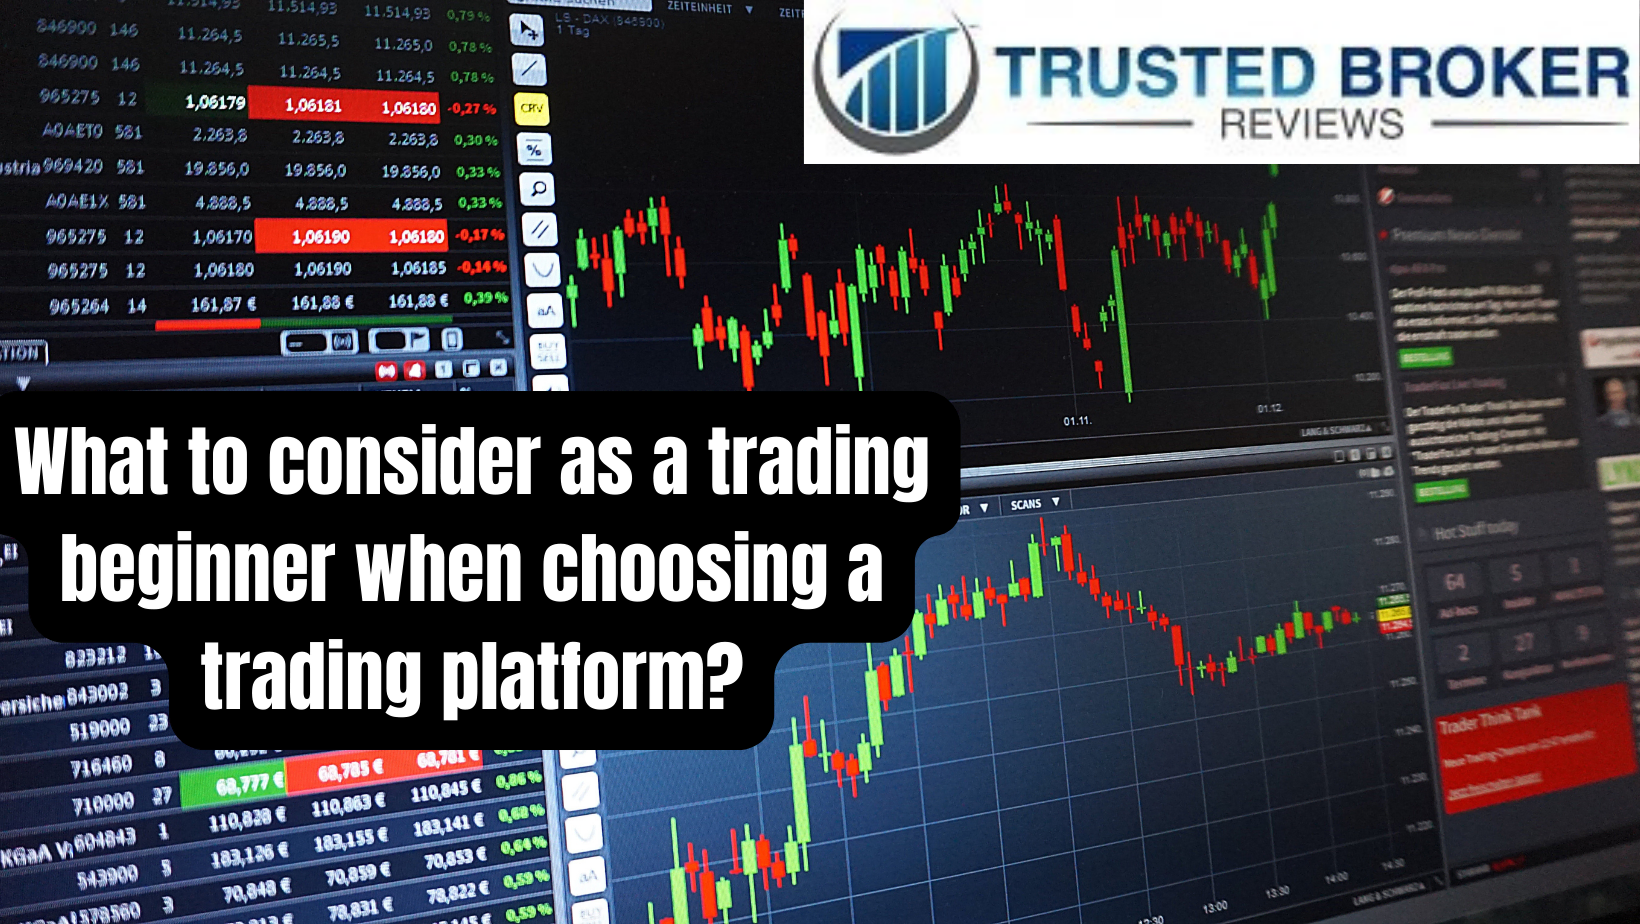 Apa yang harus dipertimbangkan sebagai pemula perdagangan saat memilih platform perdagangan?